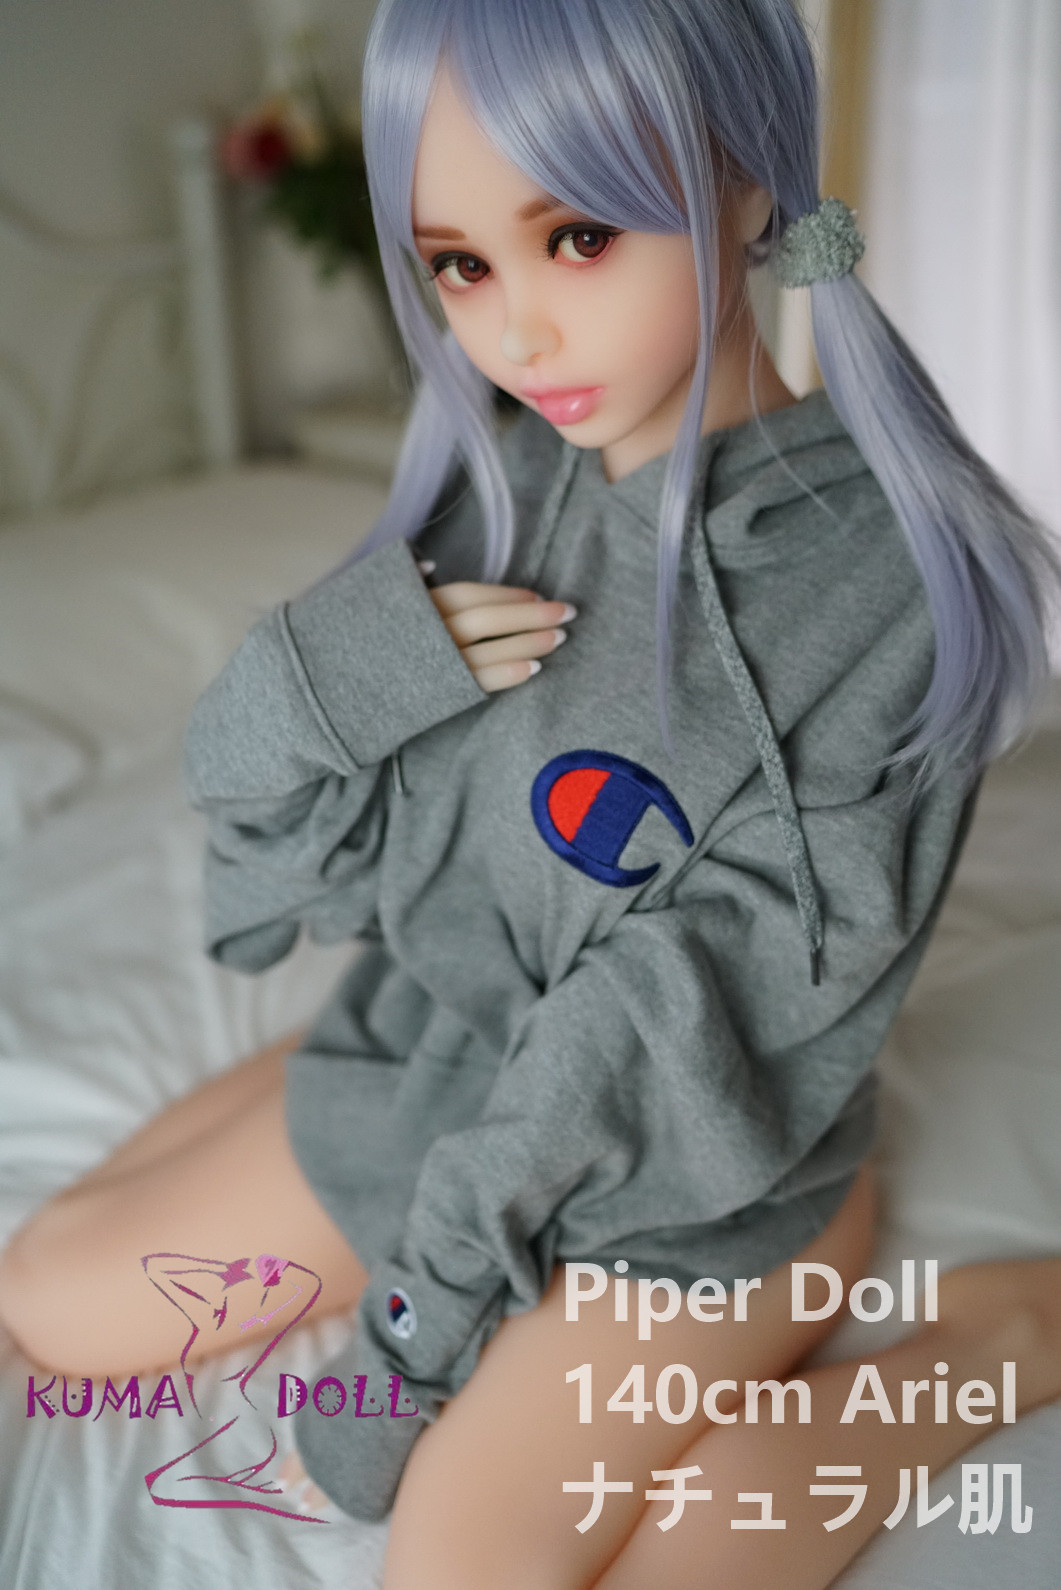 TPE Love Doll PiperDoll 140cm Ariel G Cup